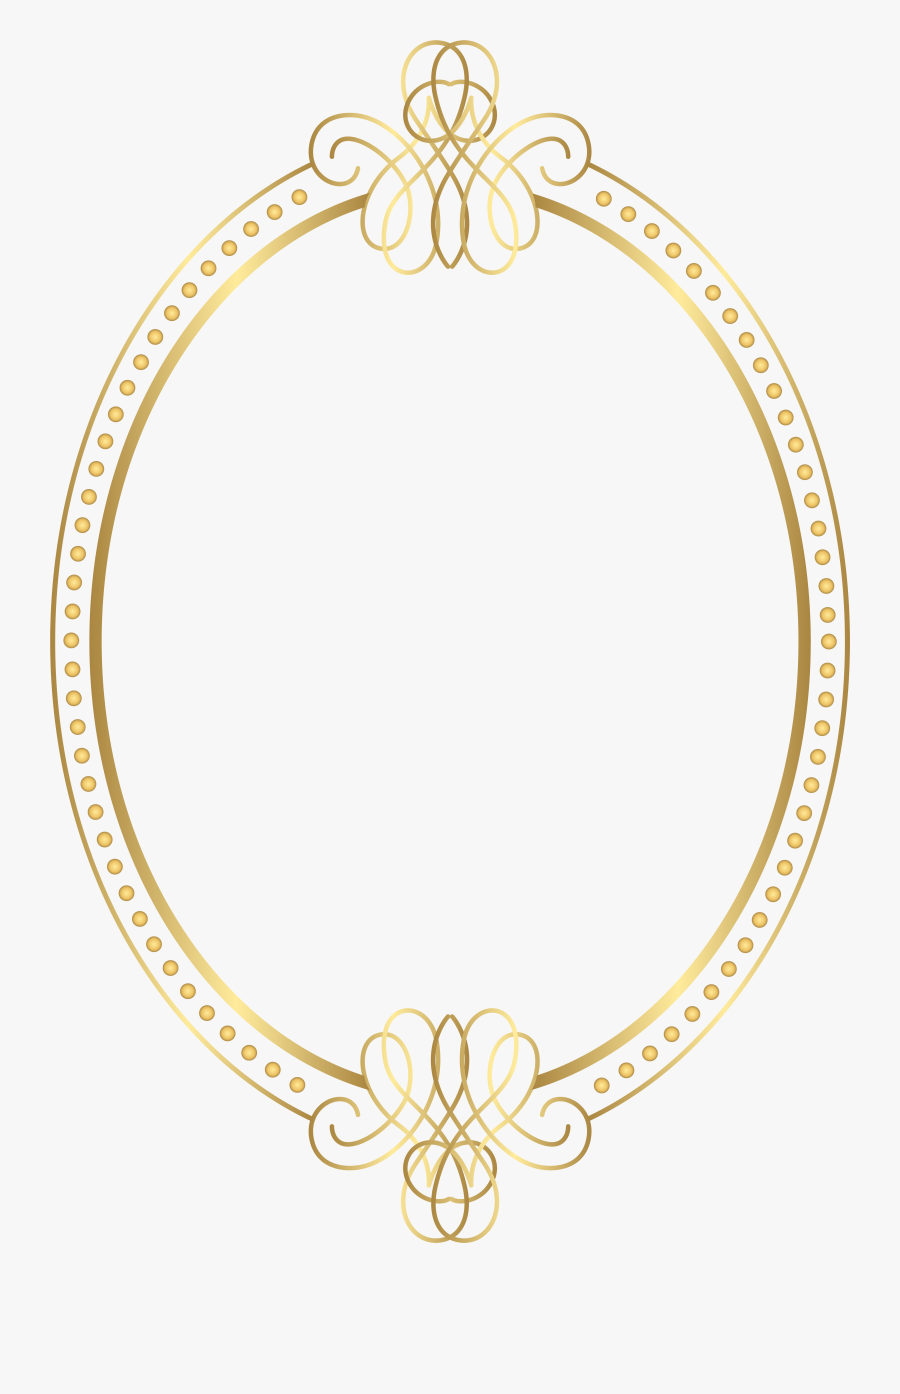 Transparent Oval Frame Png - Frame Gold Png Border, Transparent Clipart